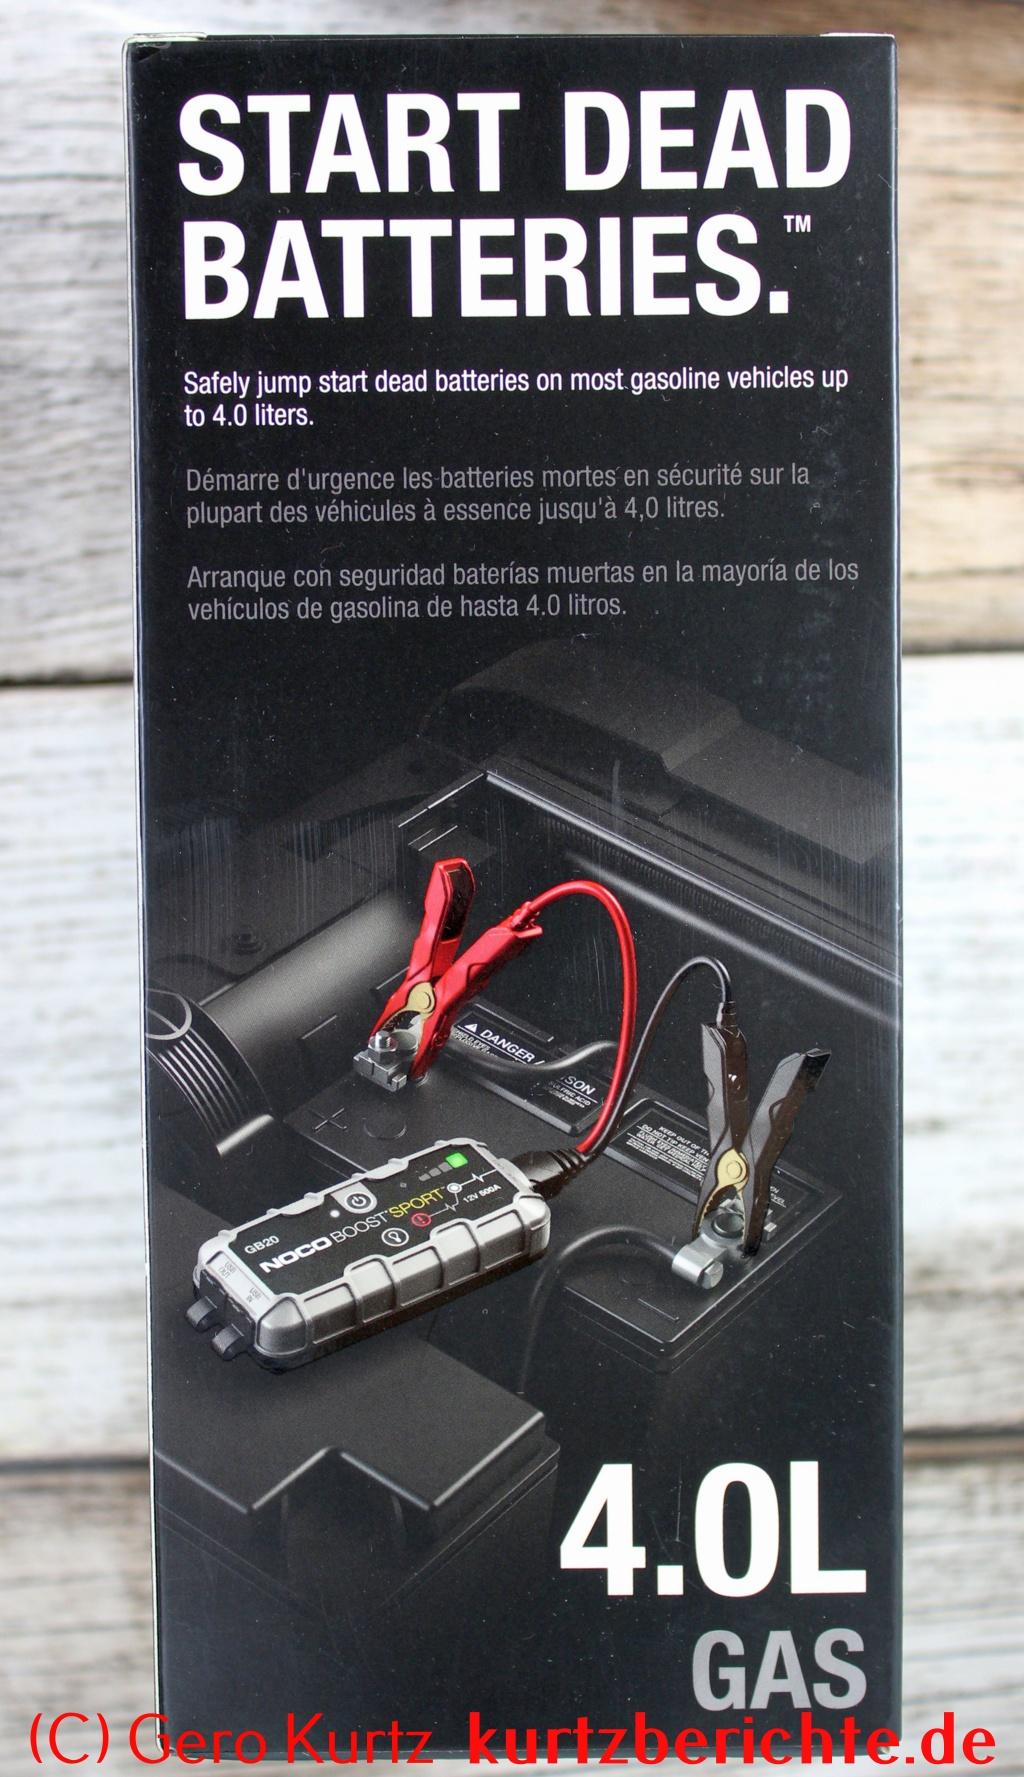 NOCO Boost Sport GB20 500A 12V UltraSafe Starthilfe - Verpackung rechte Seitenansicht